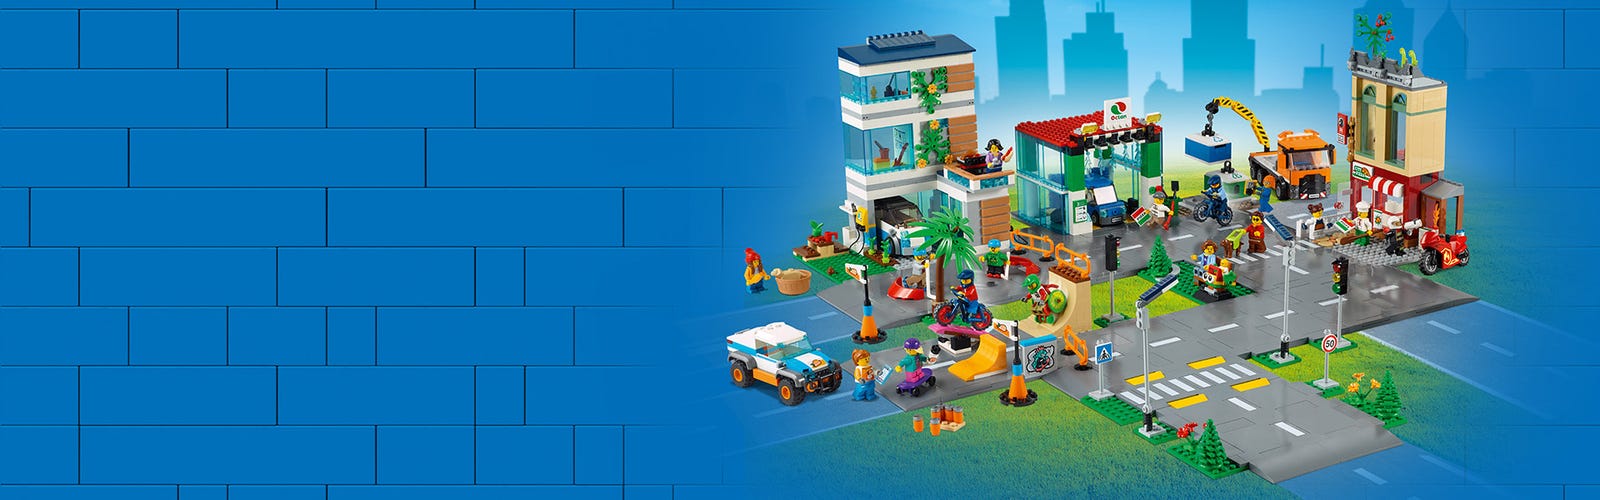 LEGO 60291 City Villetta Familiare, Casa delle Bambole, Giochi per Bambini  dai 5 Anni in su, 4 Minifigure, Idee Regalo : : Giochi e giocattoli